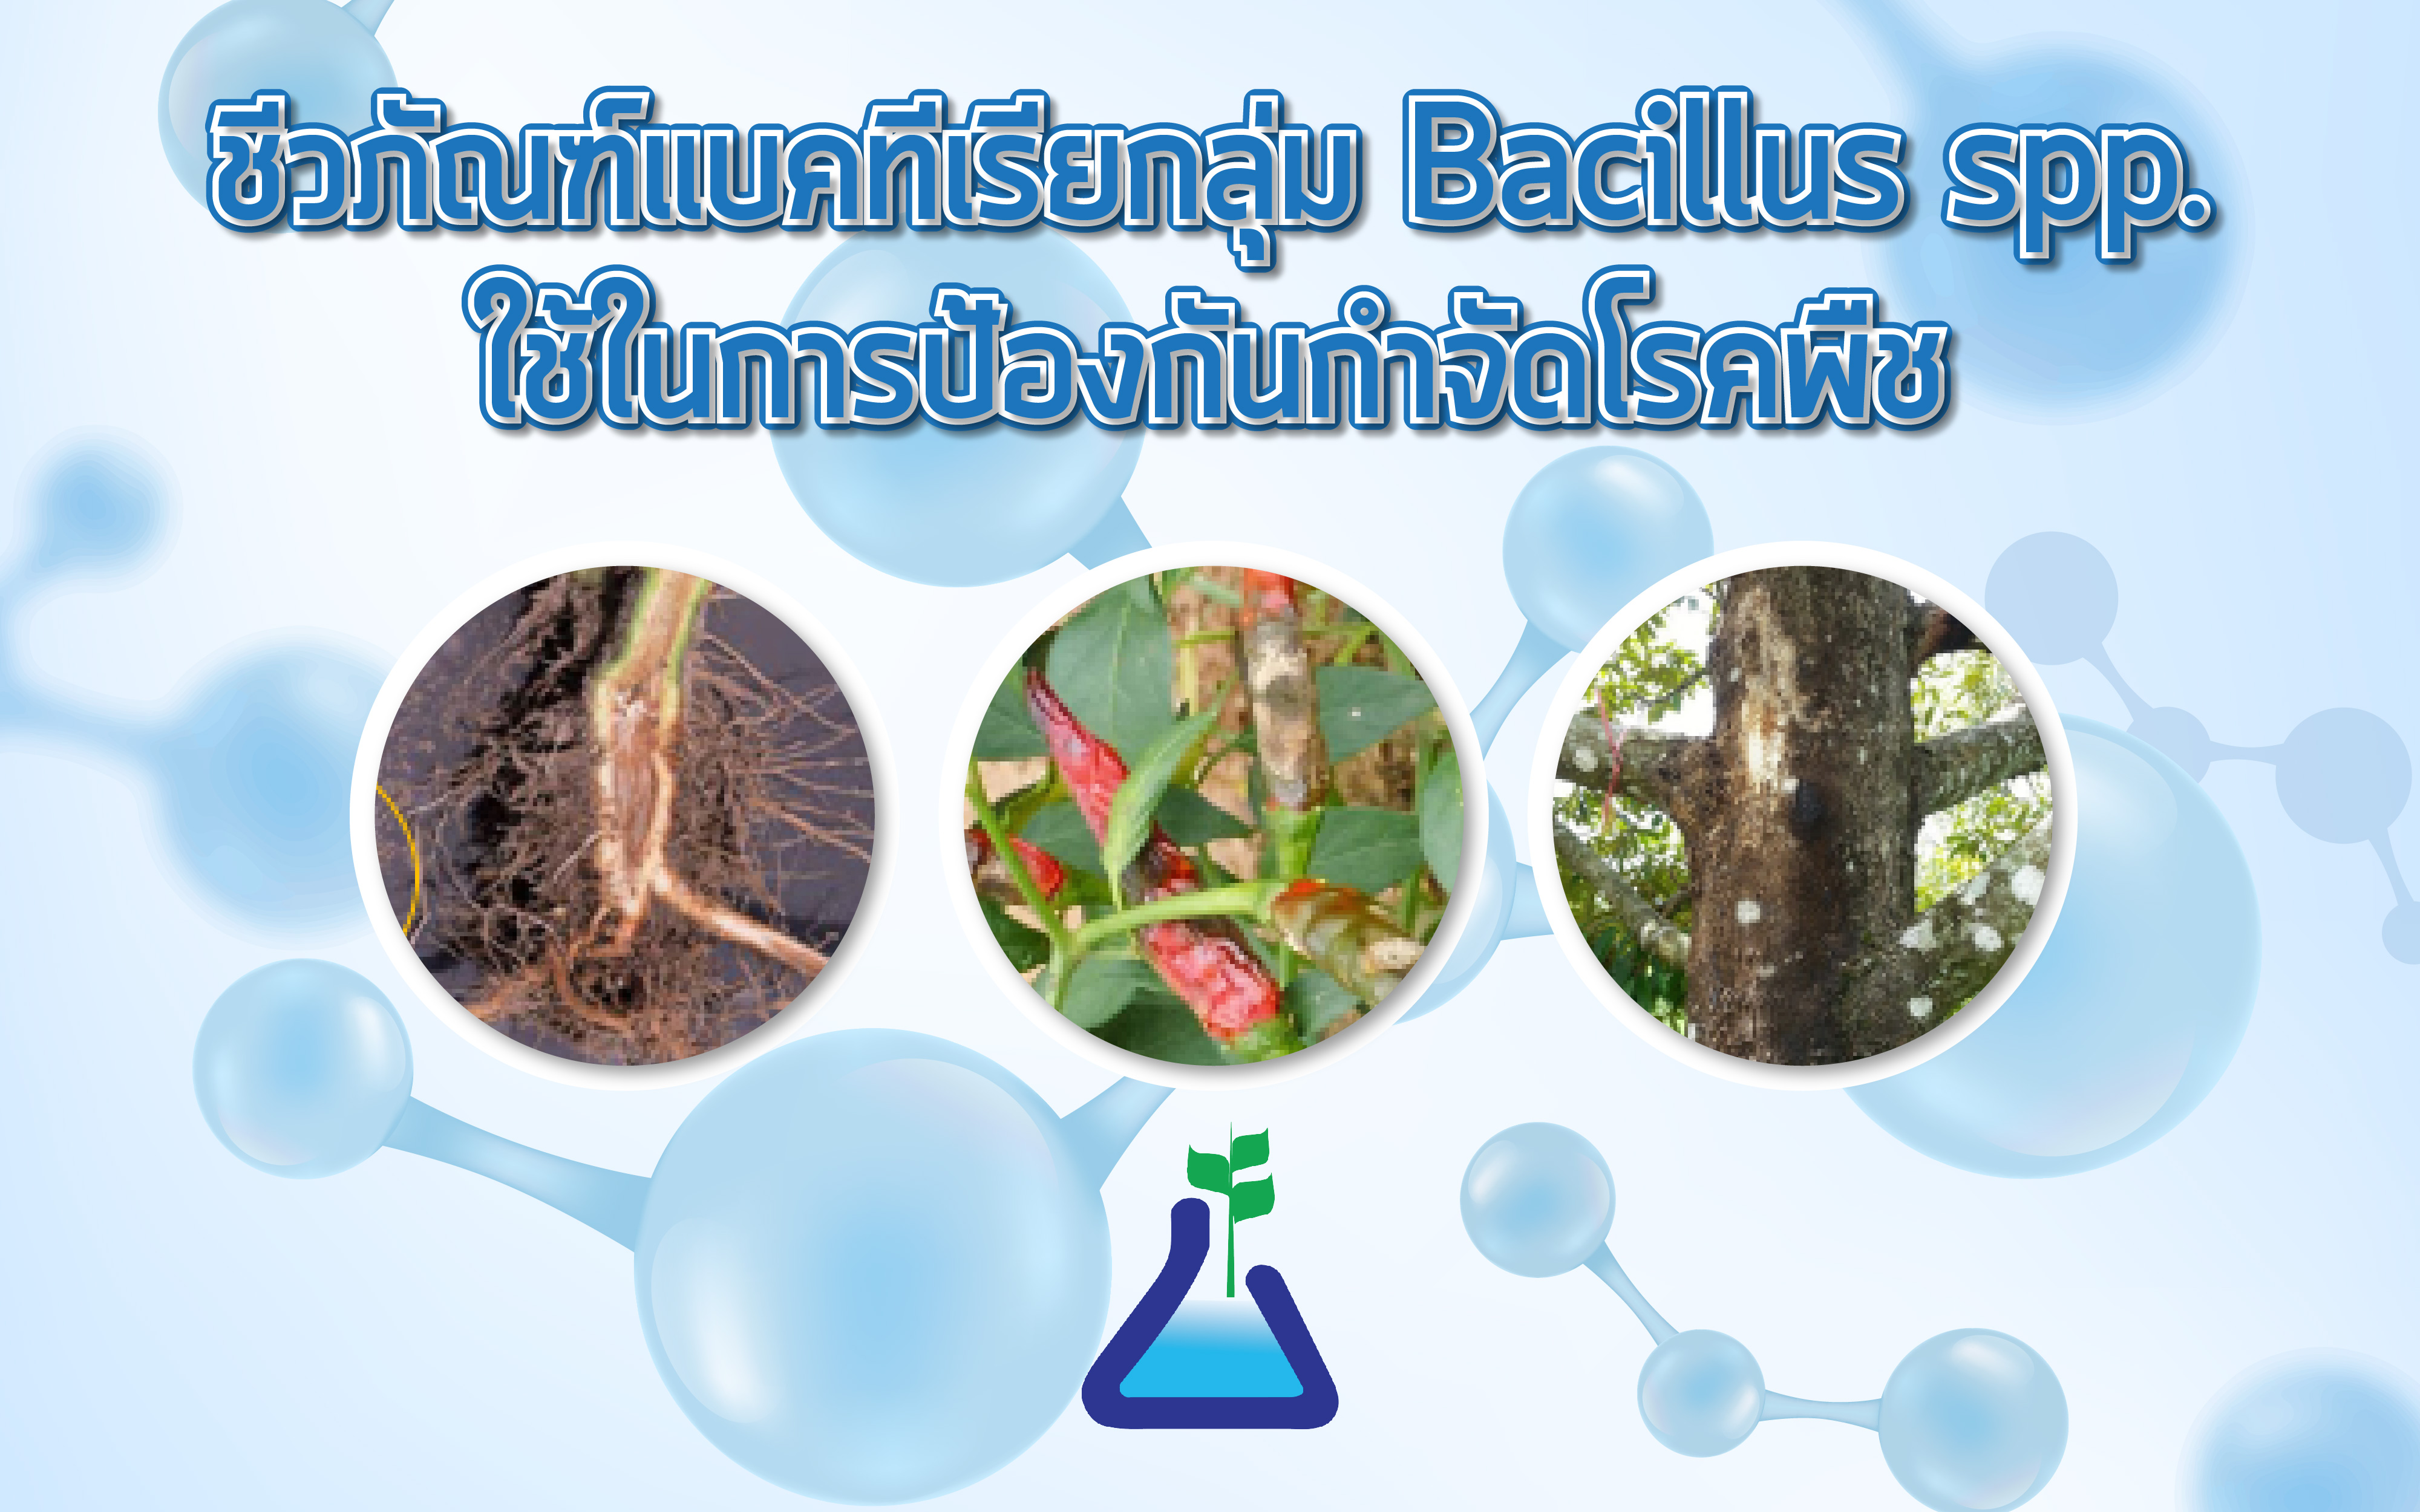 ชีวภัณฑ์แบคทีเรียกลุ่ม Bacillus spp. ใช้ในการป้องกันกำจัดโรคพืช